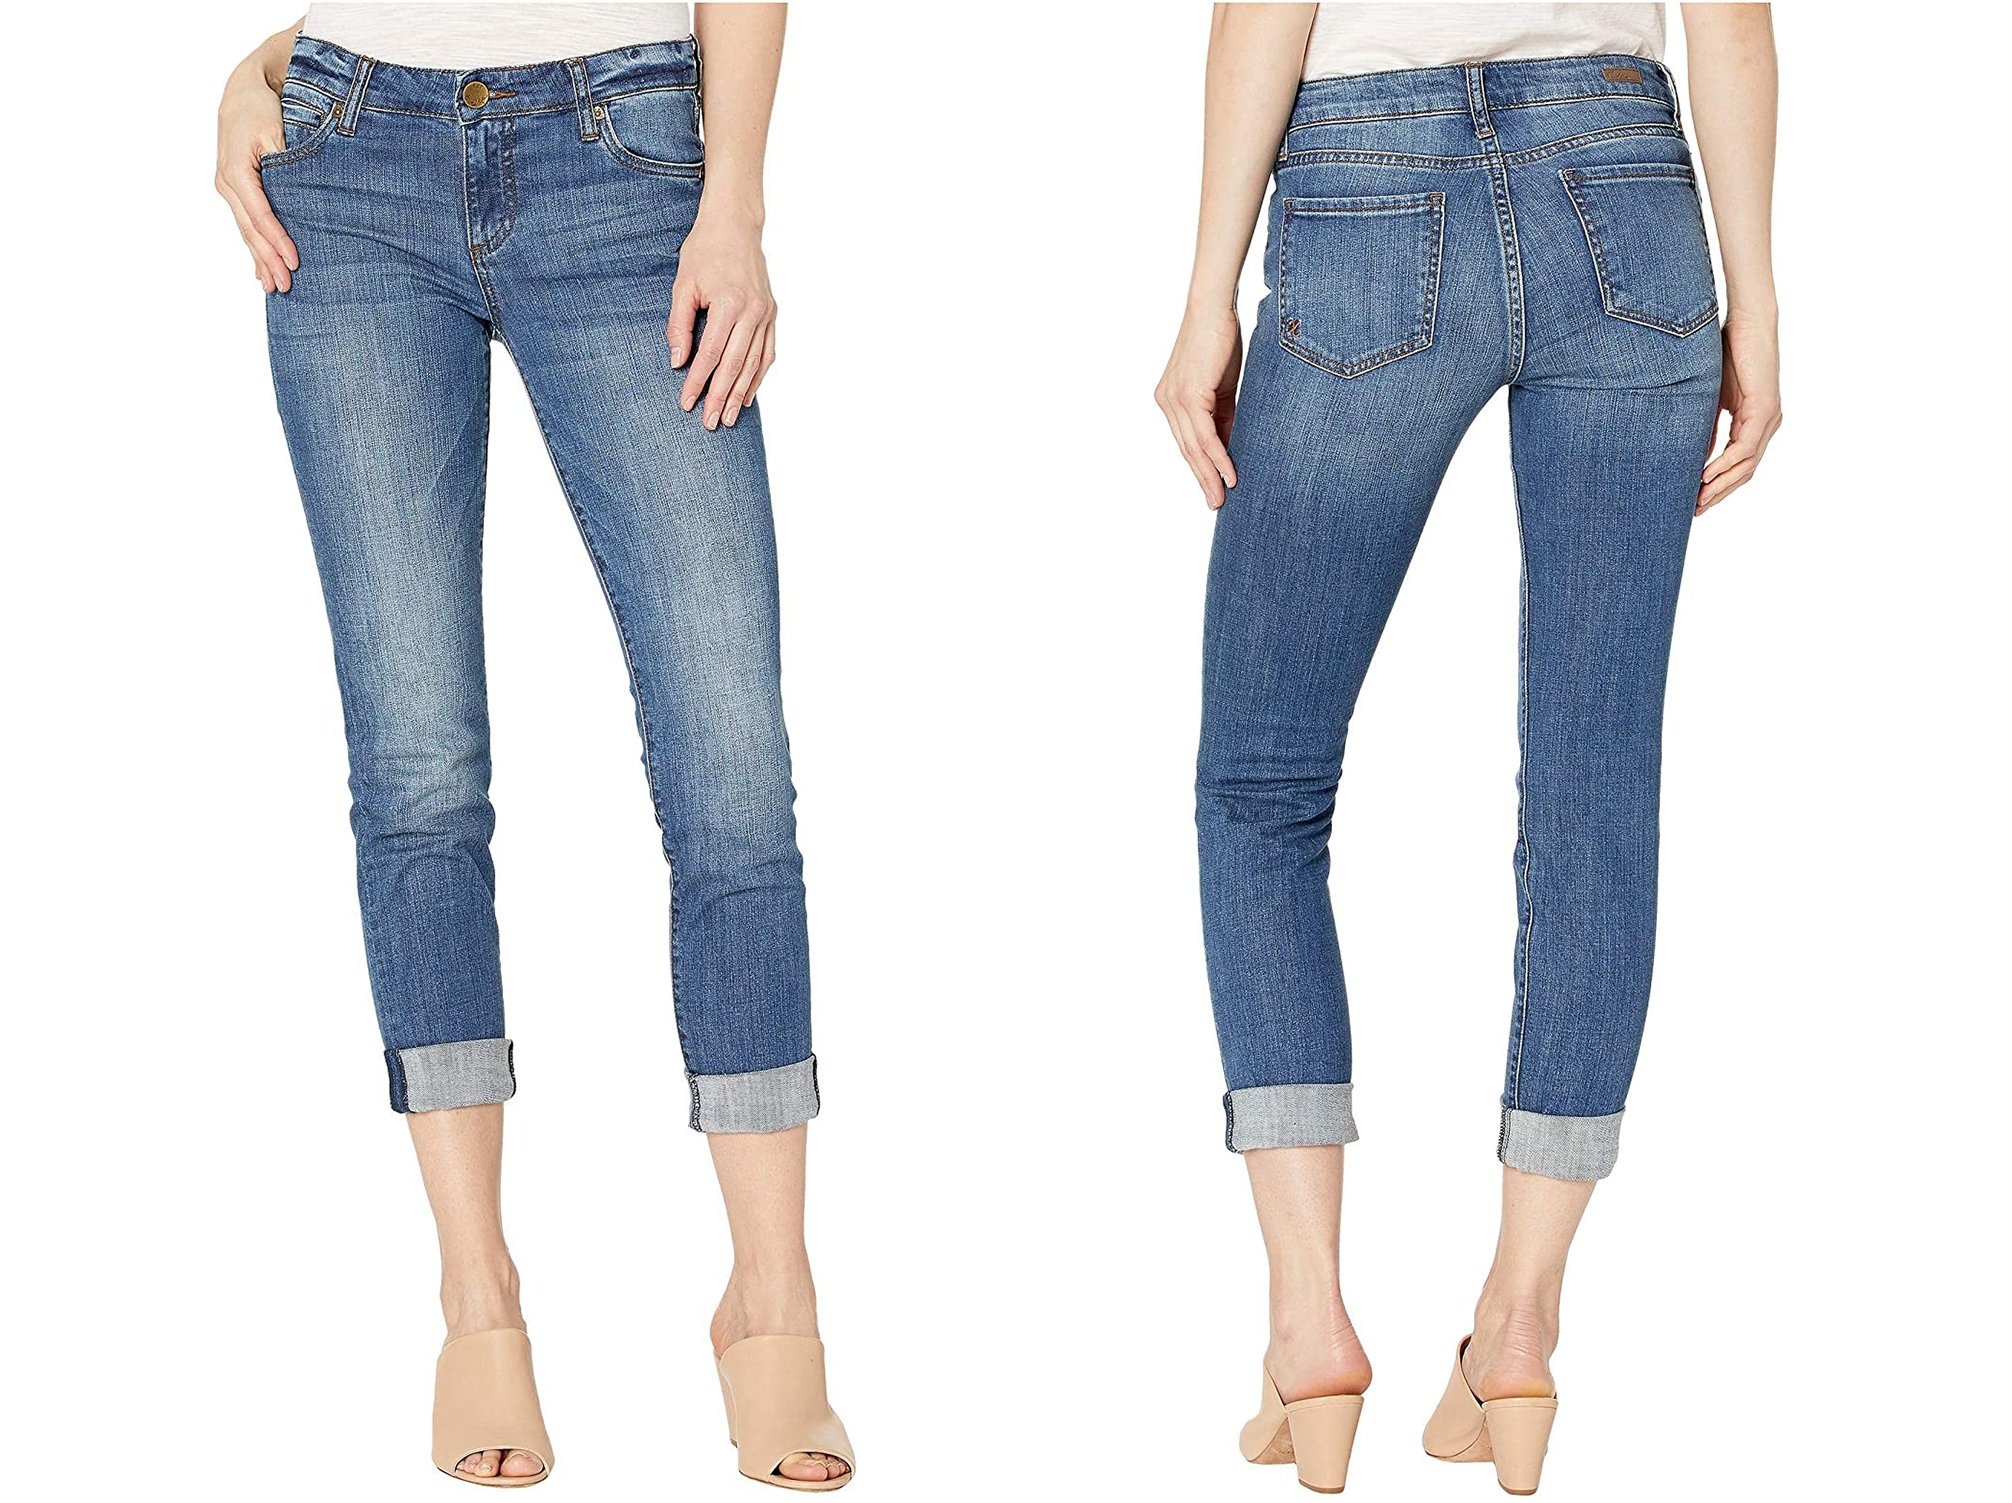 Los 10 jeans más cómodos para hombres y mujeres - 7